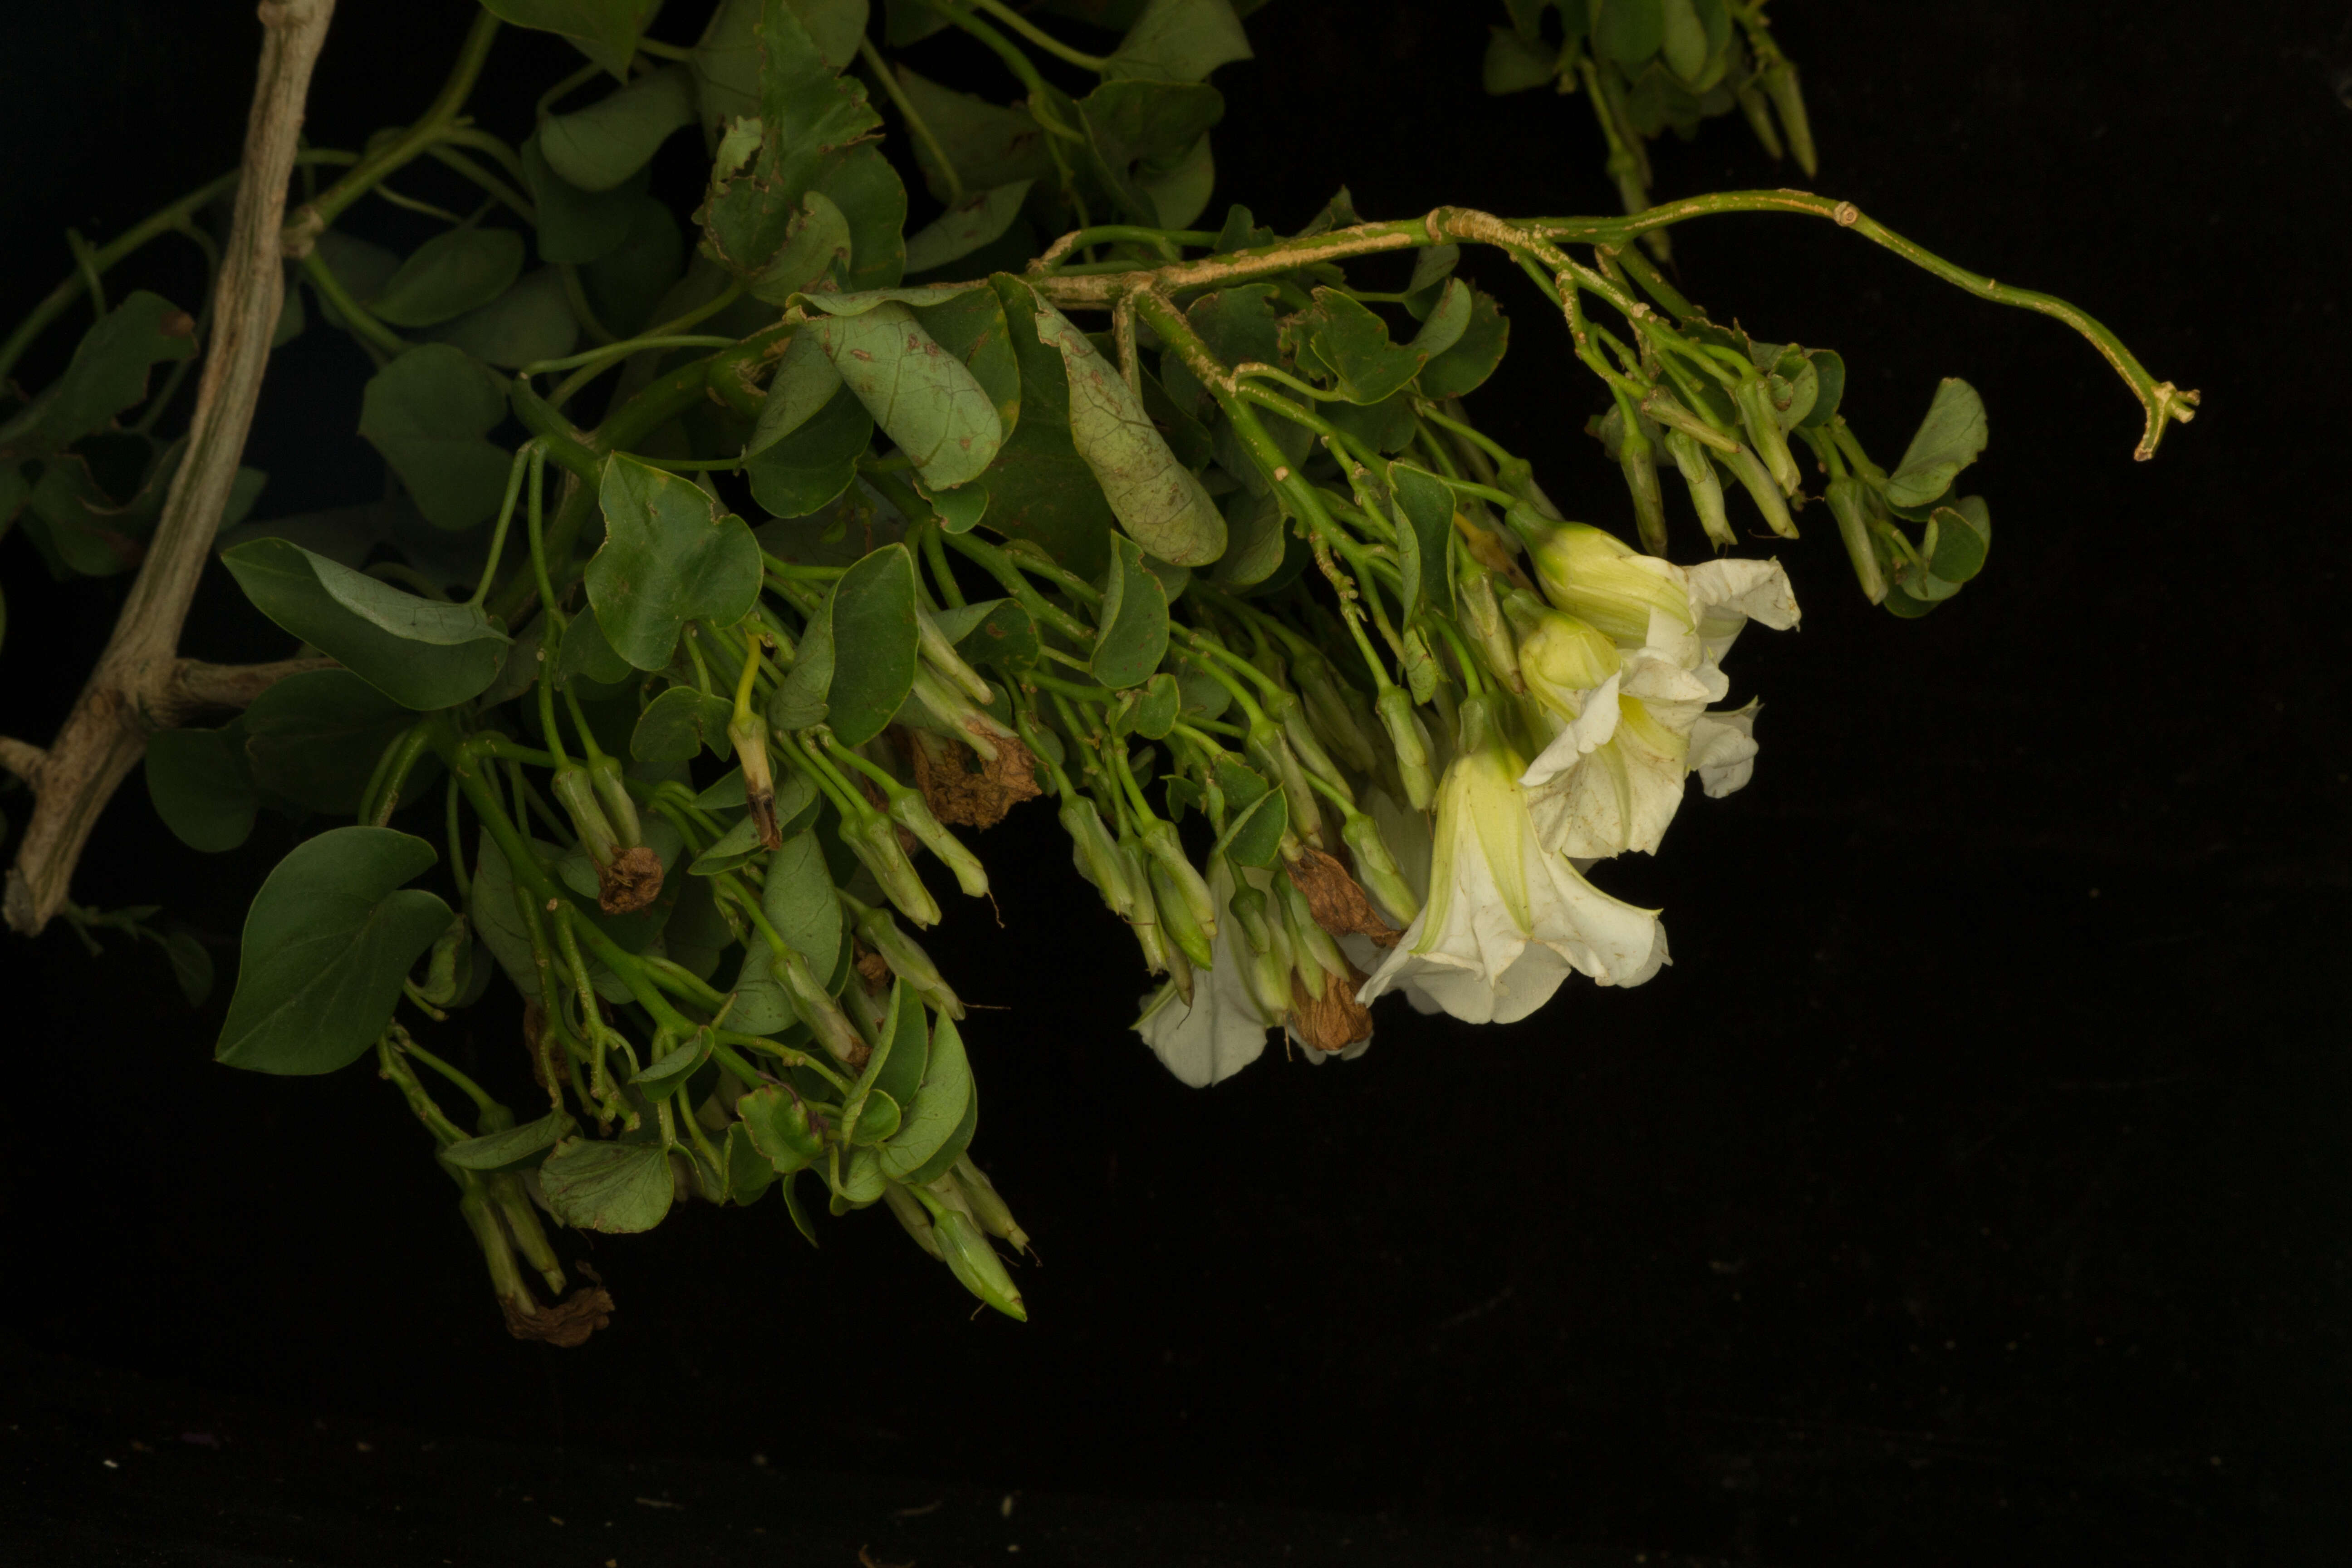 Image of Christmas vine